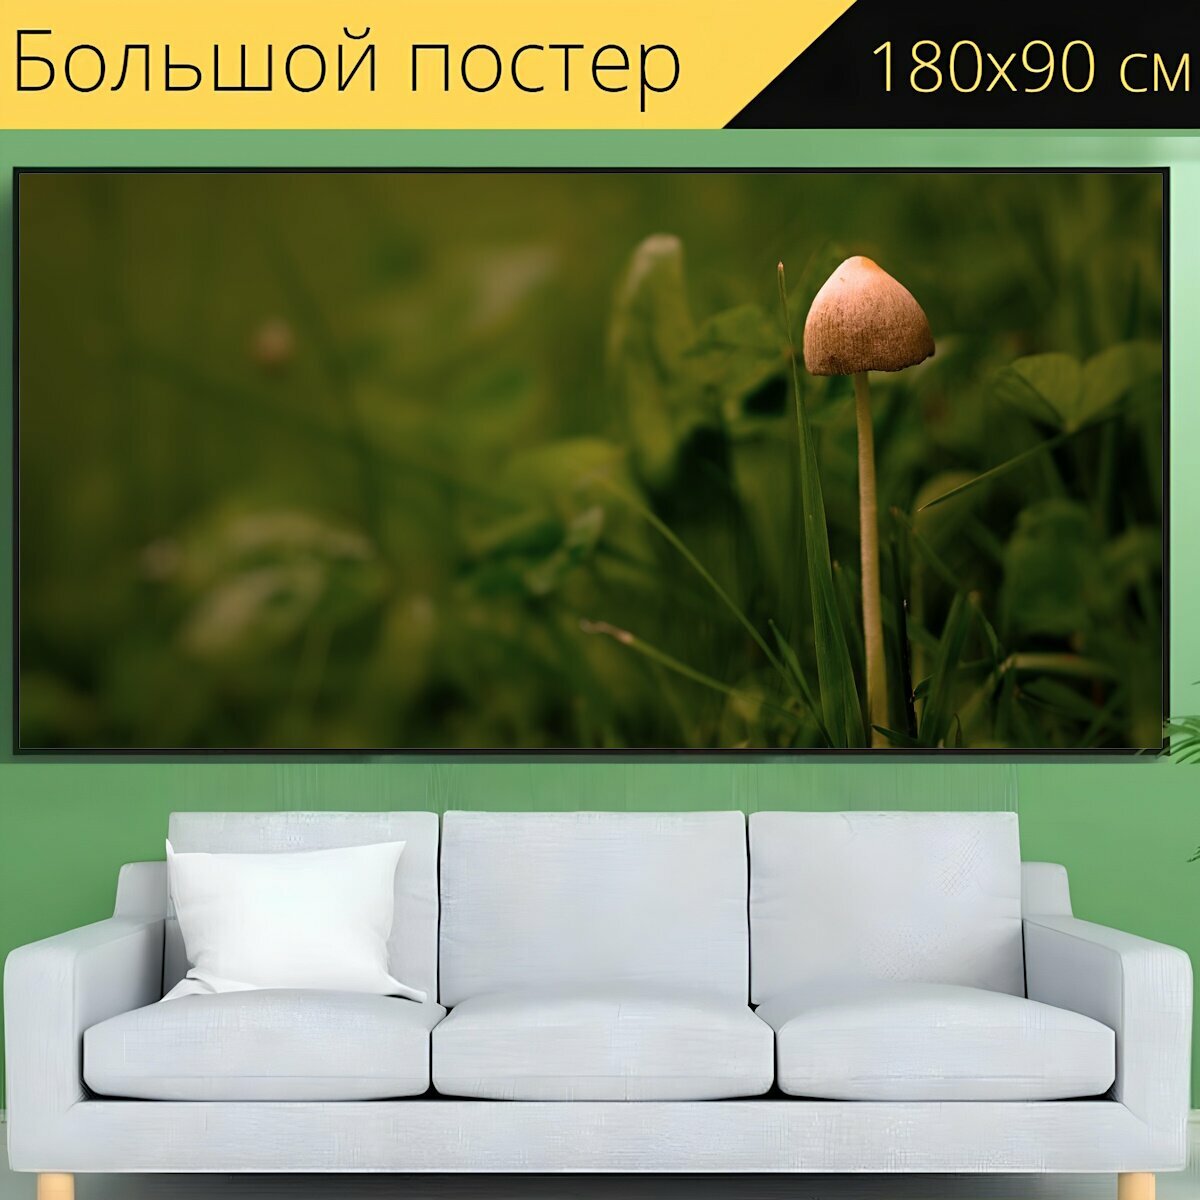 Большой постер "Гриб, маленький гриб, экран грибок" 180 x 90 см. для интерьера